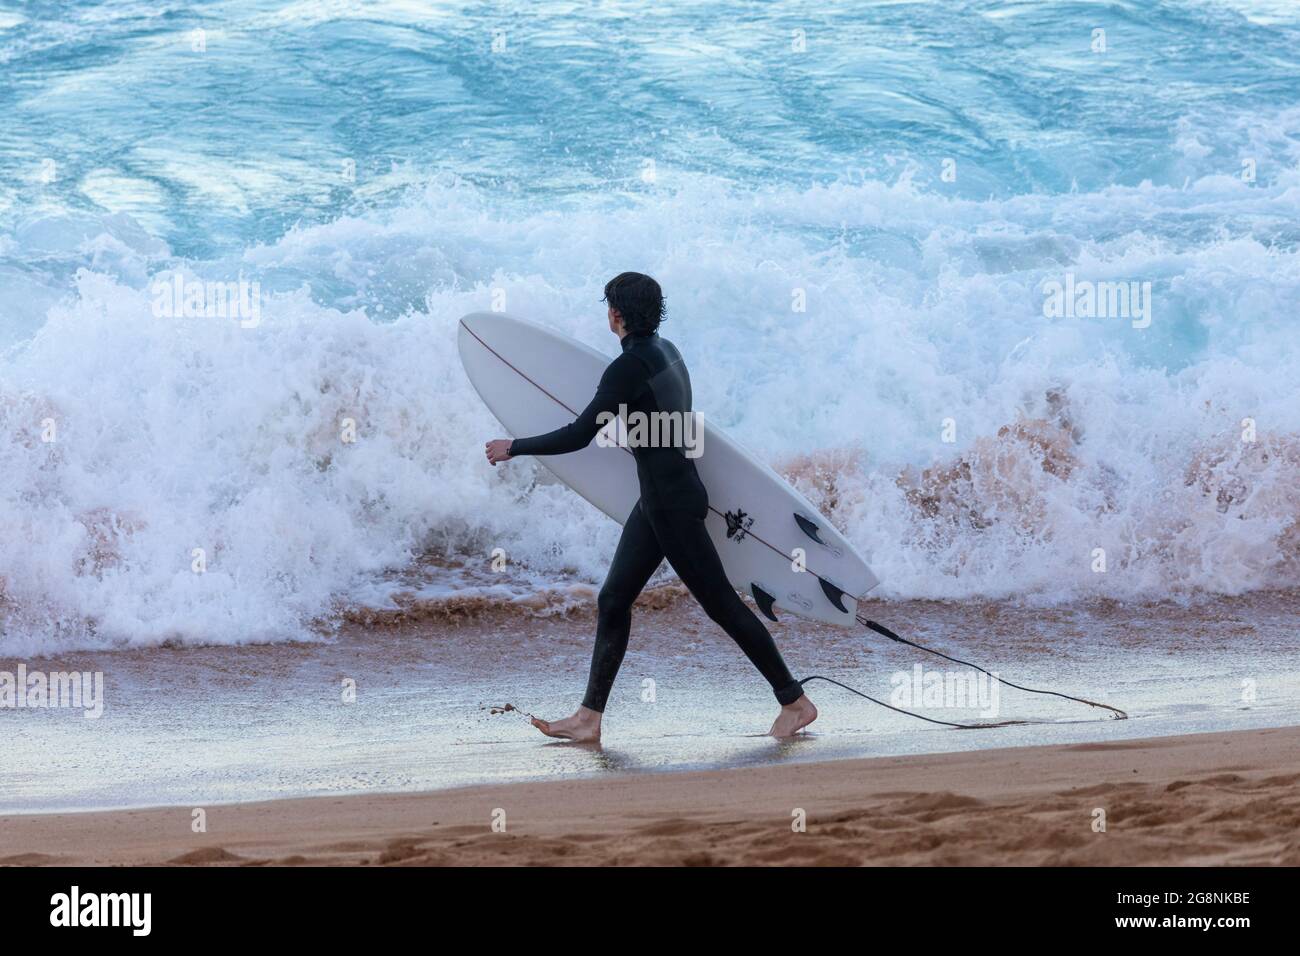 Australian surfer, teenage boy wearing a wetsuit carry his surfboard toward the ocean in Sydney,NSW,Australia Stock Photo